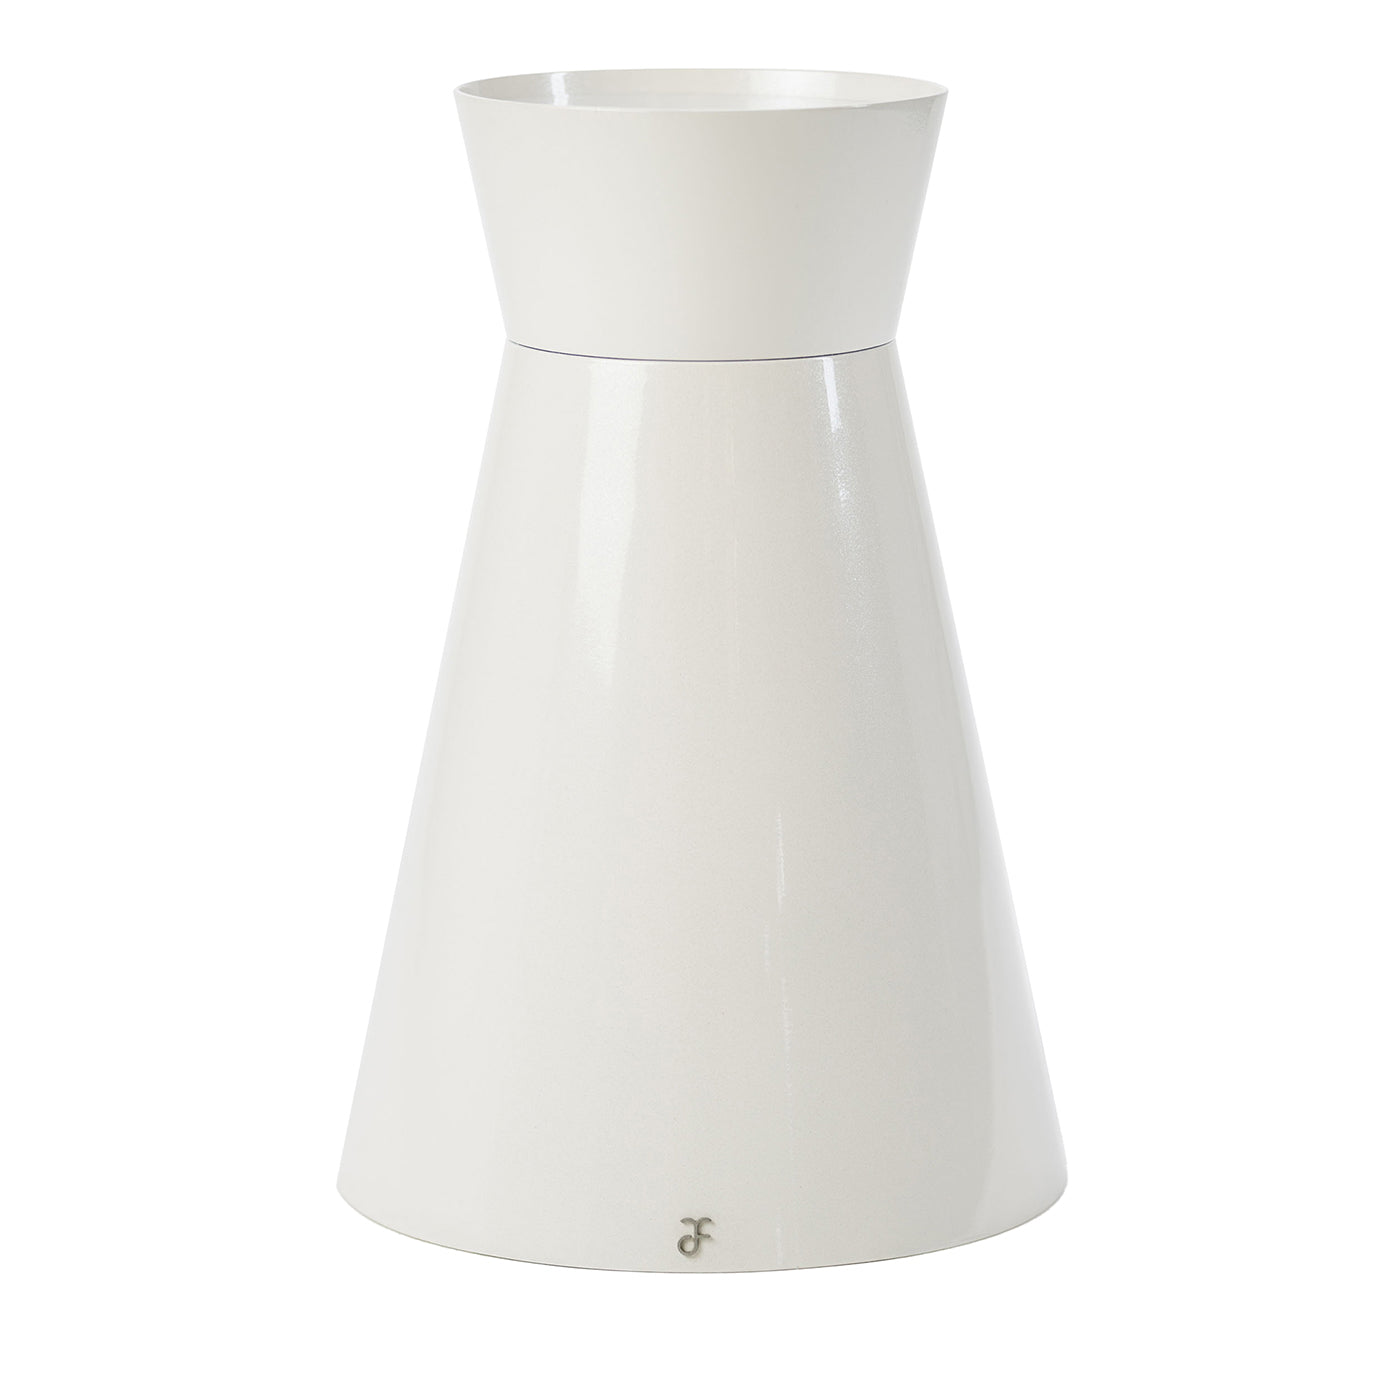 Lampe Ulus 45 blanche de Marco Piva - Vue principale